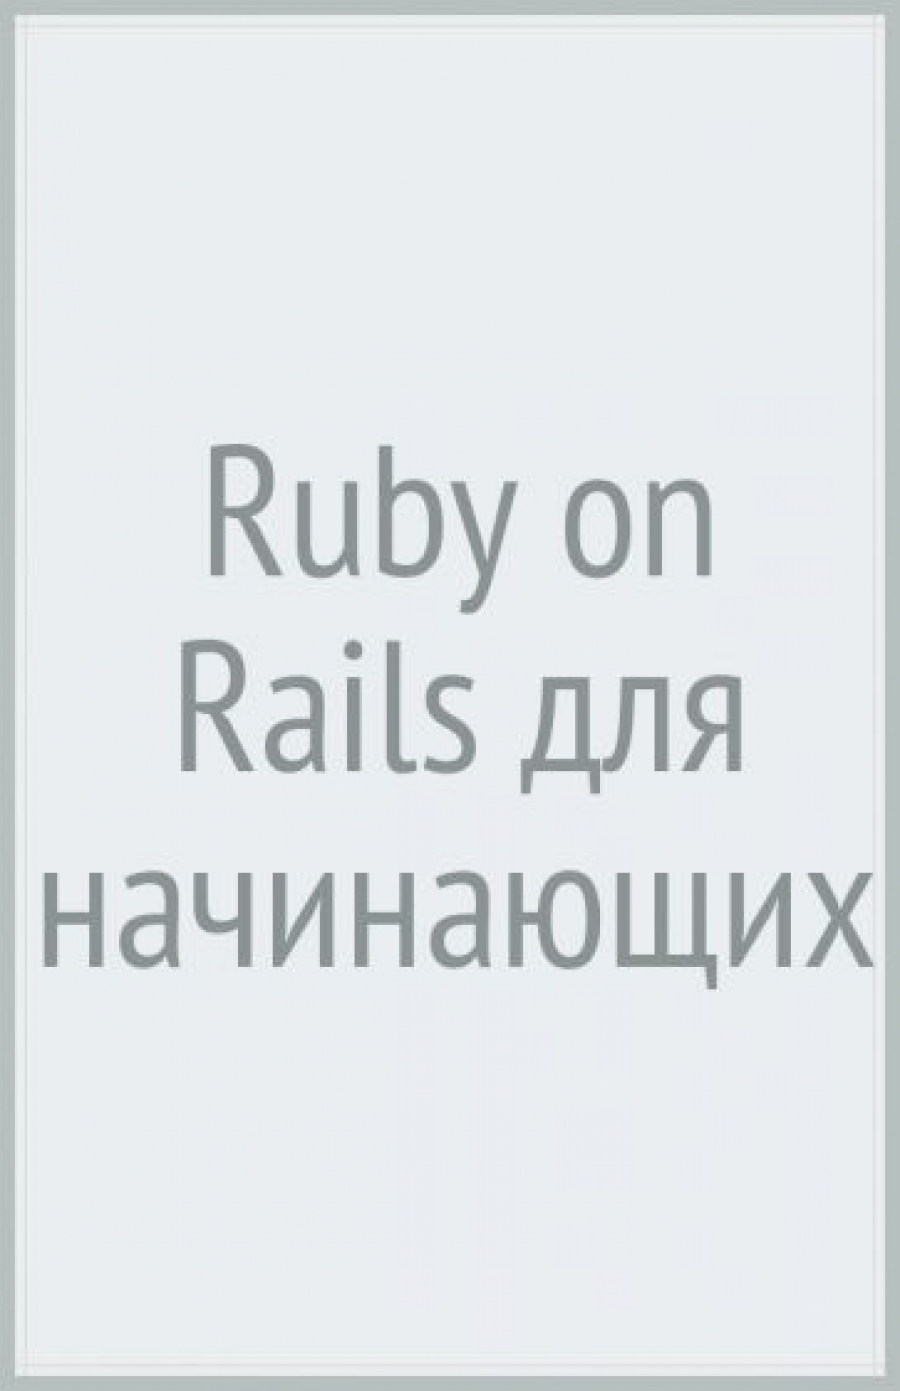  . Ruby on Rails   